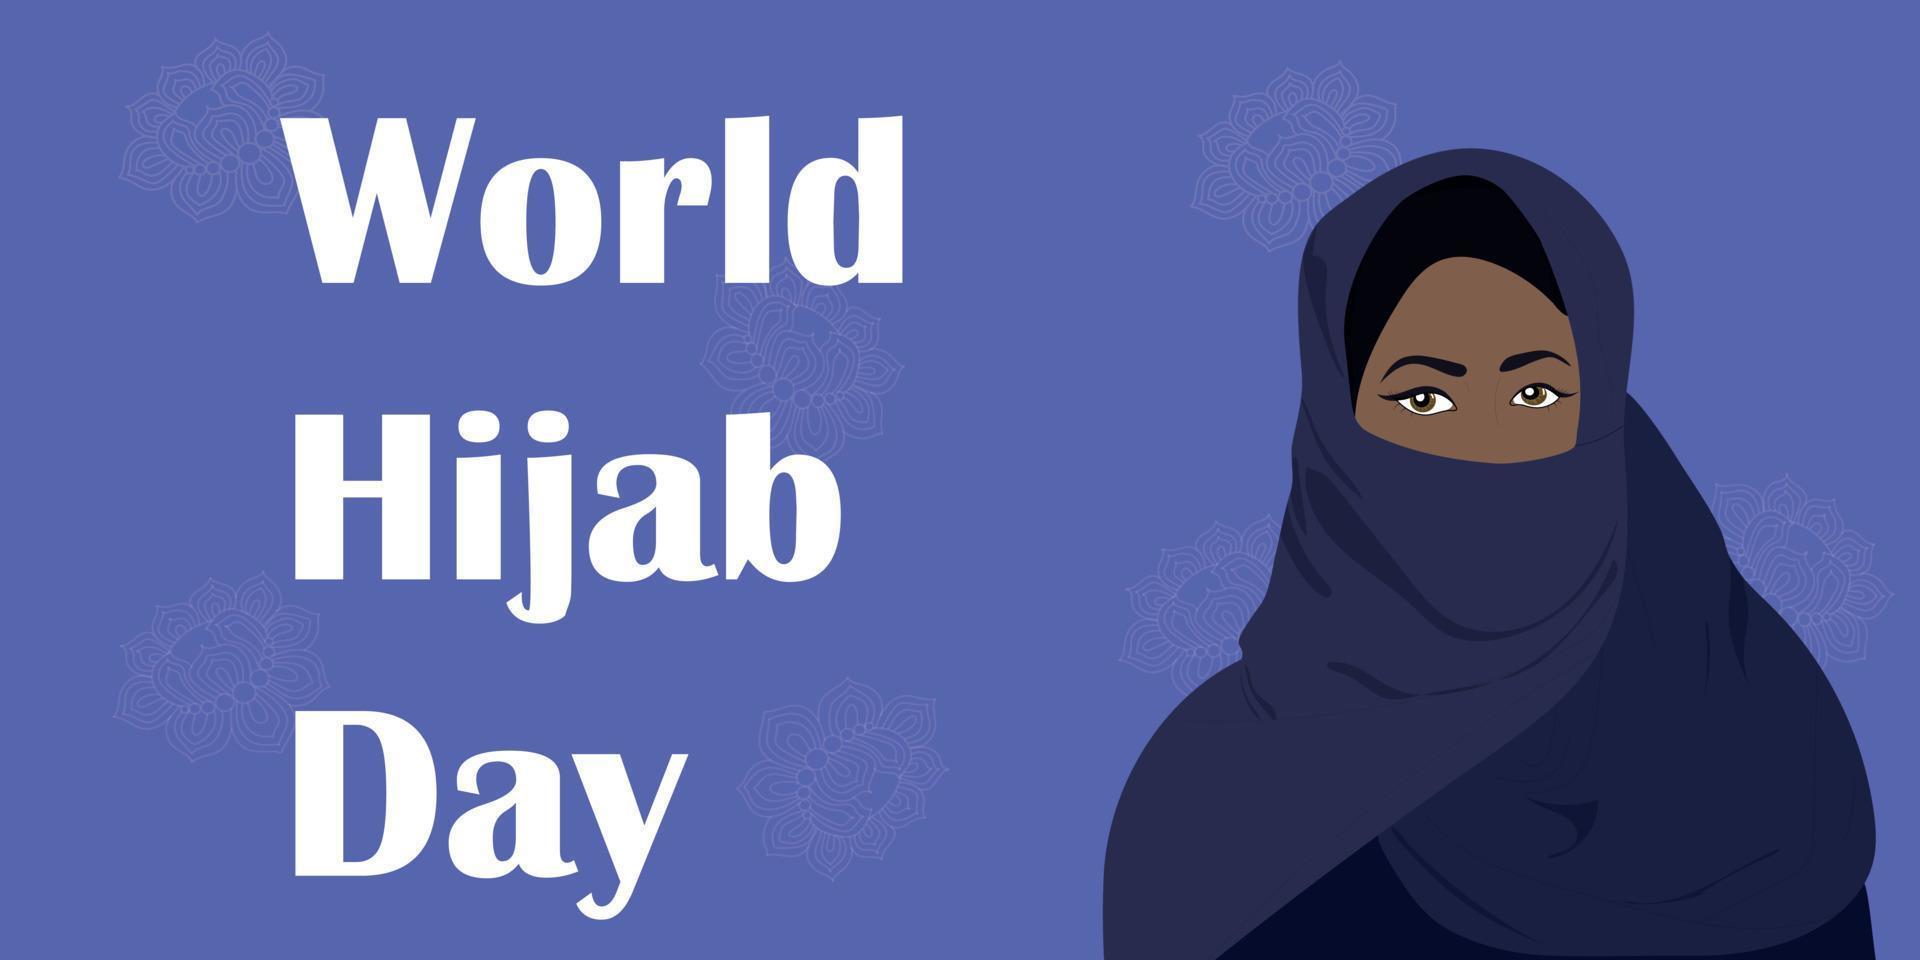 bannière de la journée mondiale du hijab. femme musulmane en hijab. vecteur